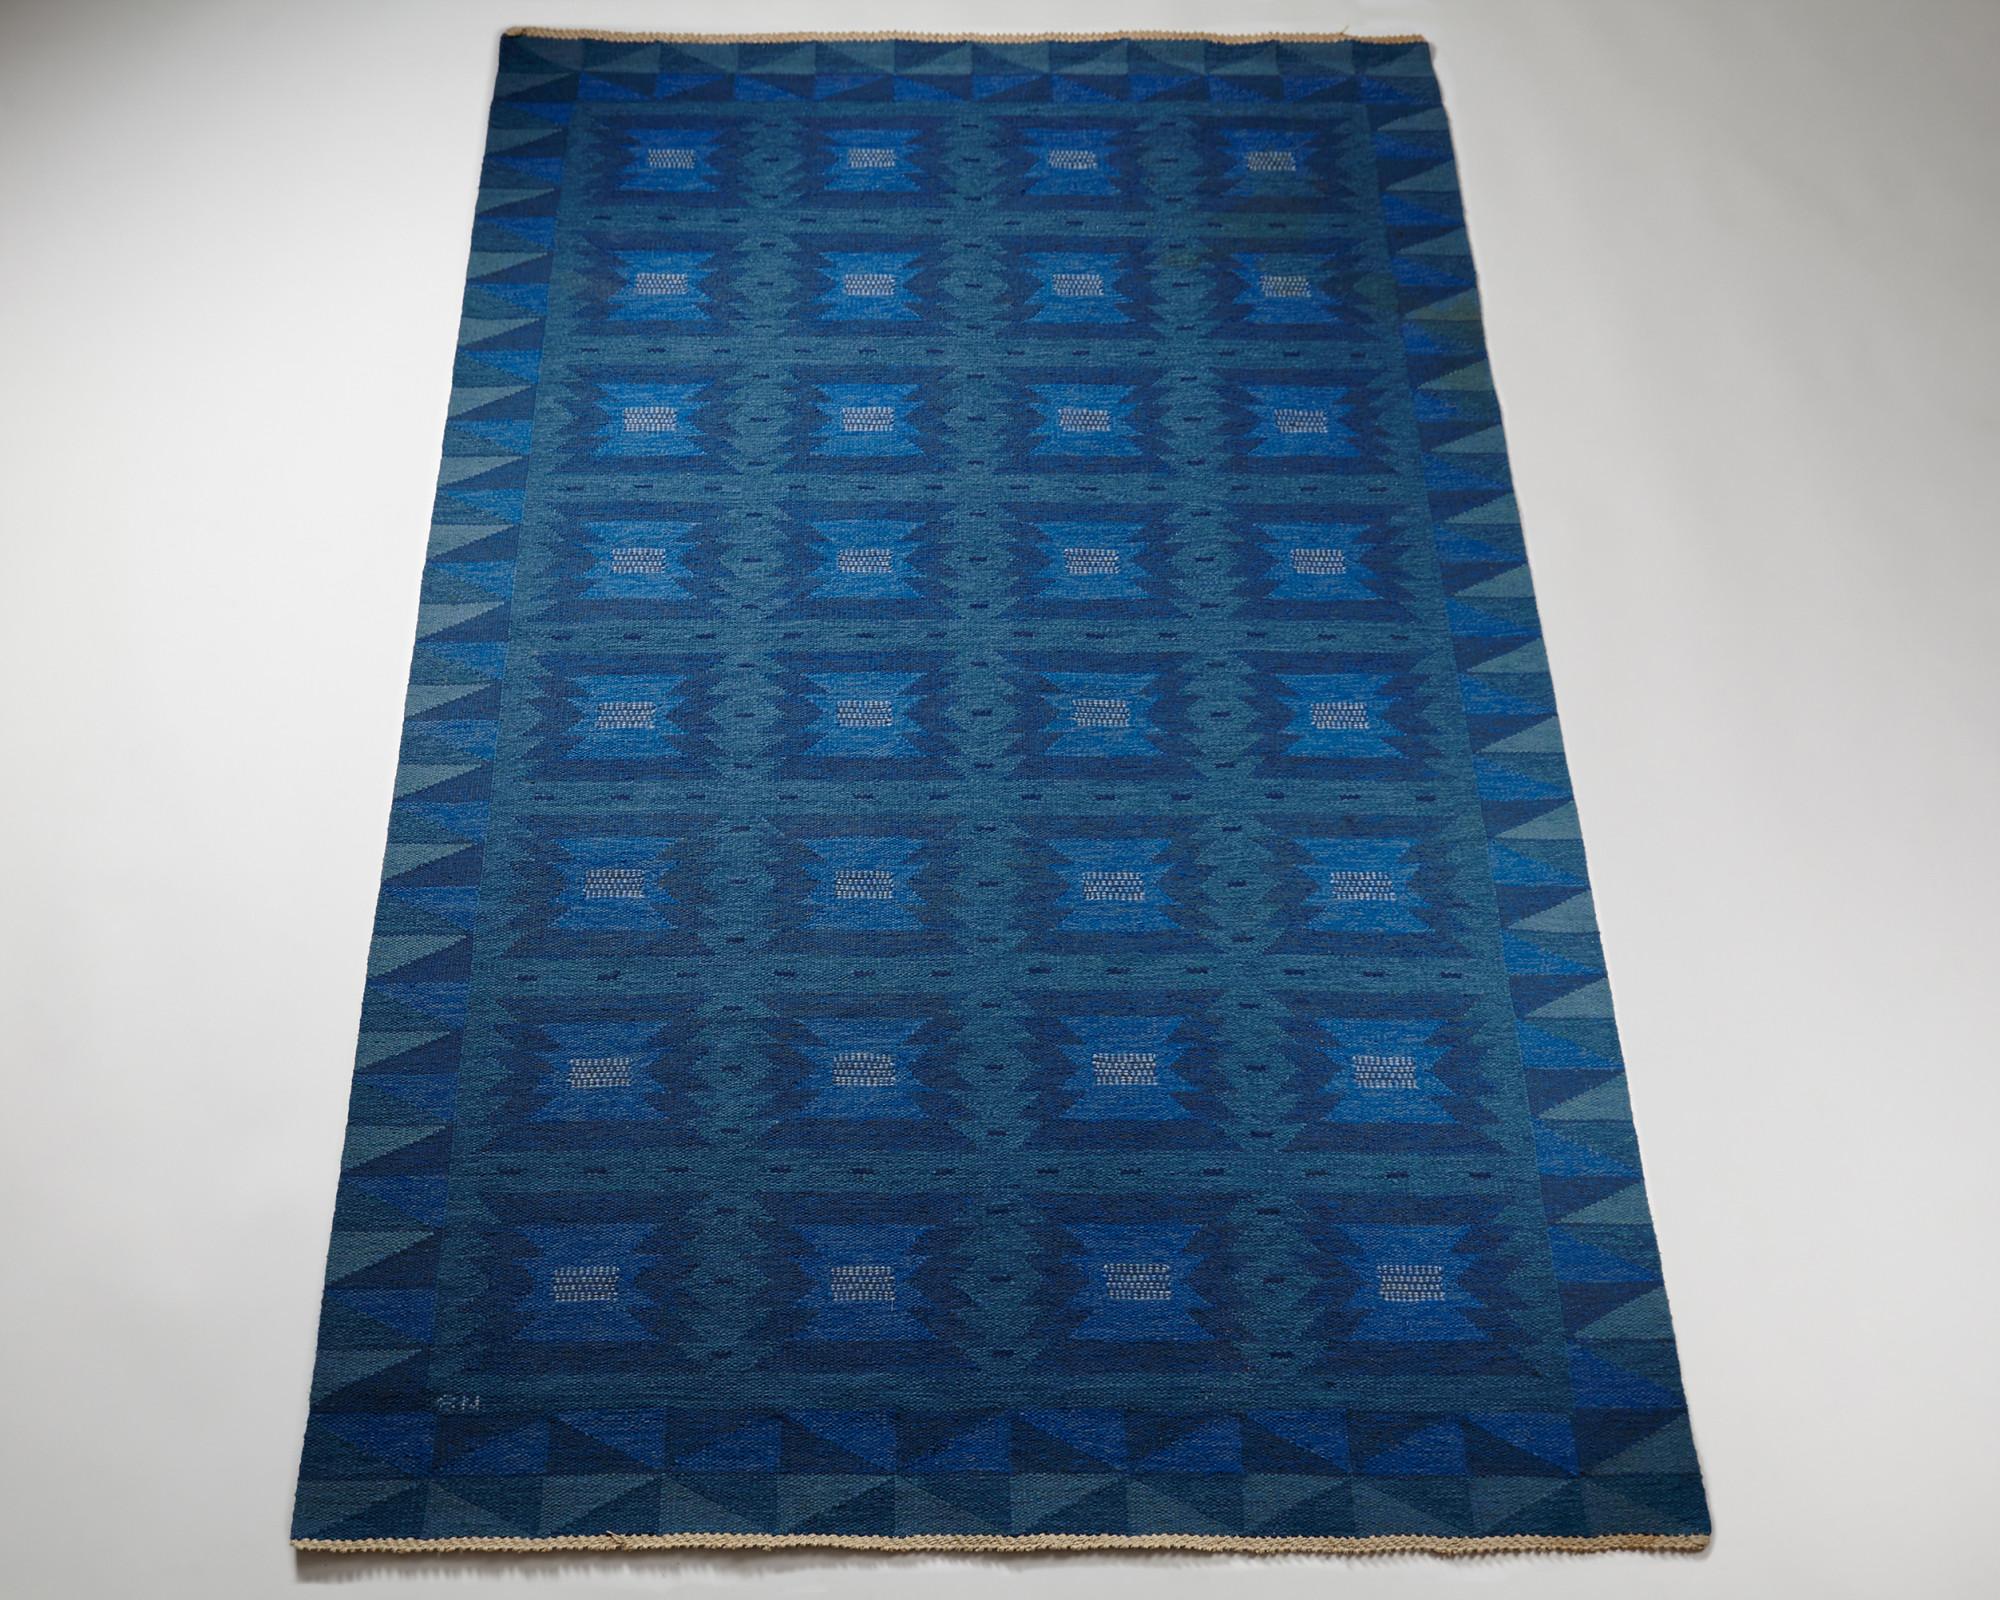 Anonymous Swedish rug,
1950's.

Kelim technique.

Dimensions:
L: 307 cm/ 10' 1''
W: 200 cm/ 6' 6 3/4''